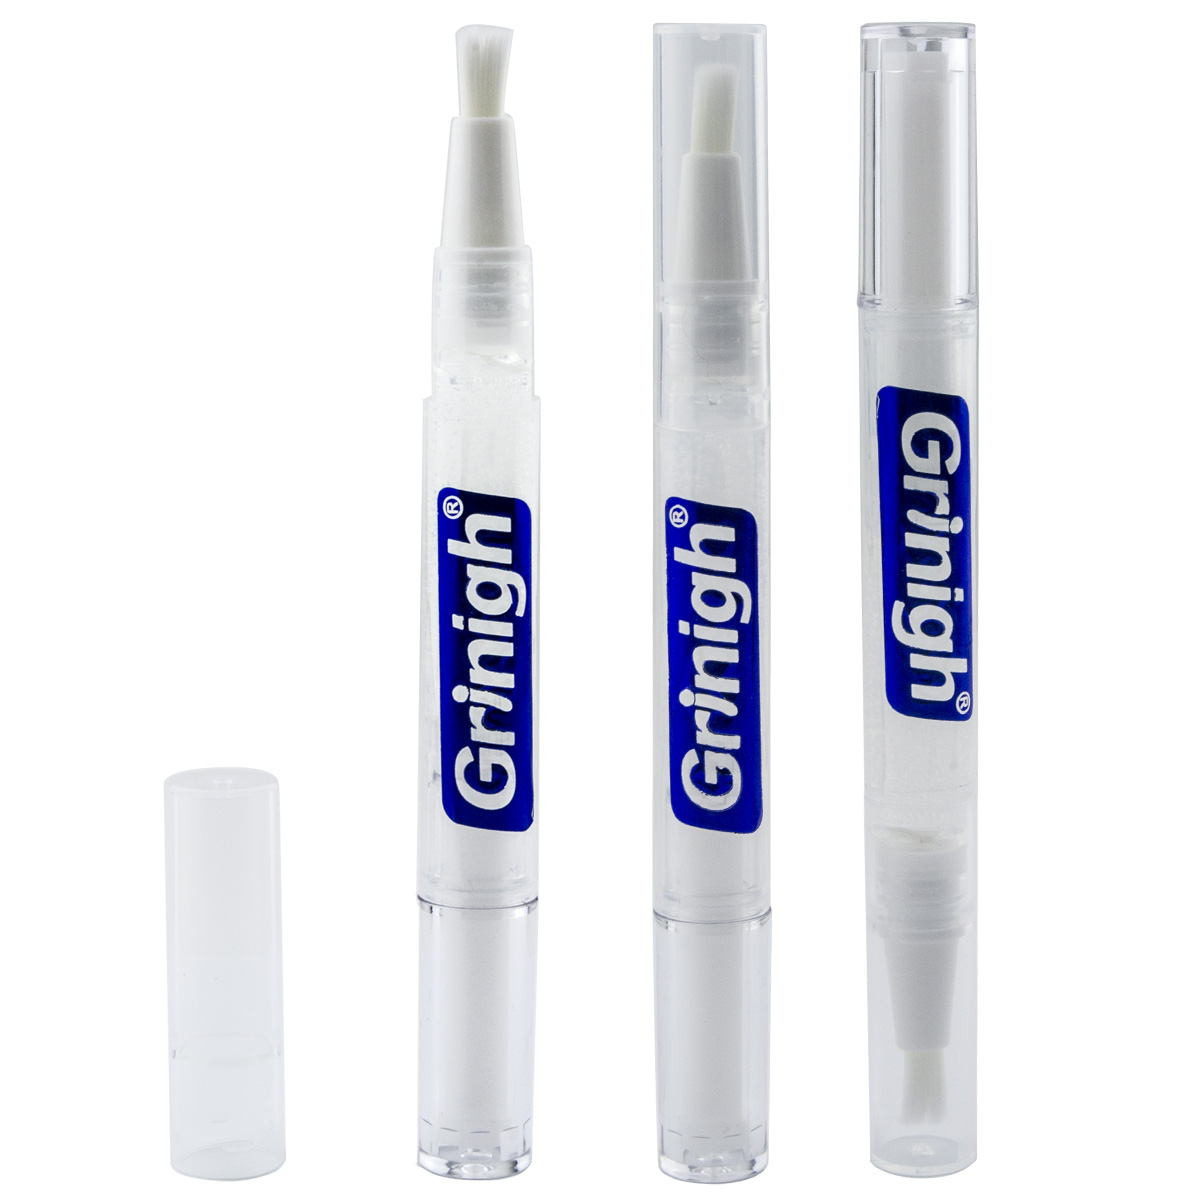 Grin365 Точные белые зубы Отбеливание Аппликатор Pen с натуральными ингредиентами - 3 подсчитывать - Концентрированный гель прочность (6% Пероксид водорода)